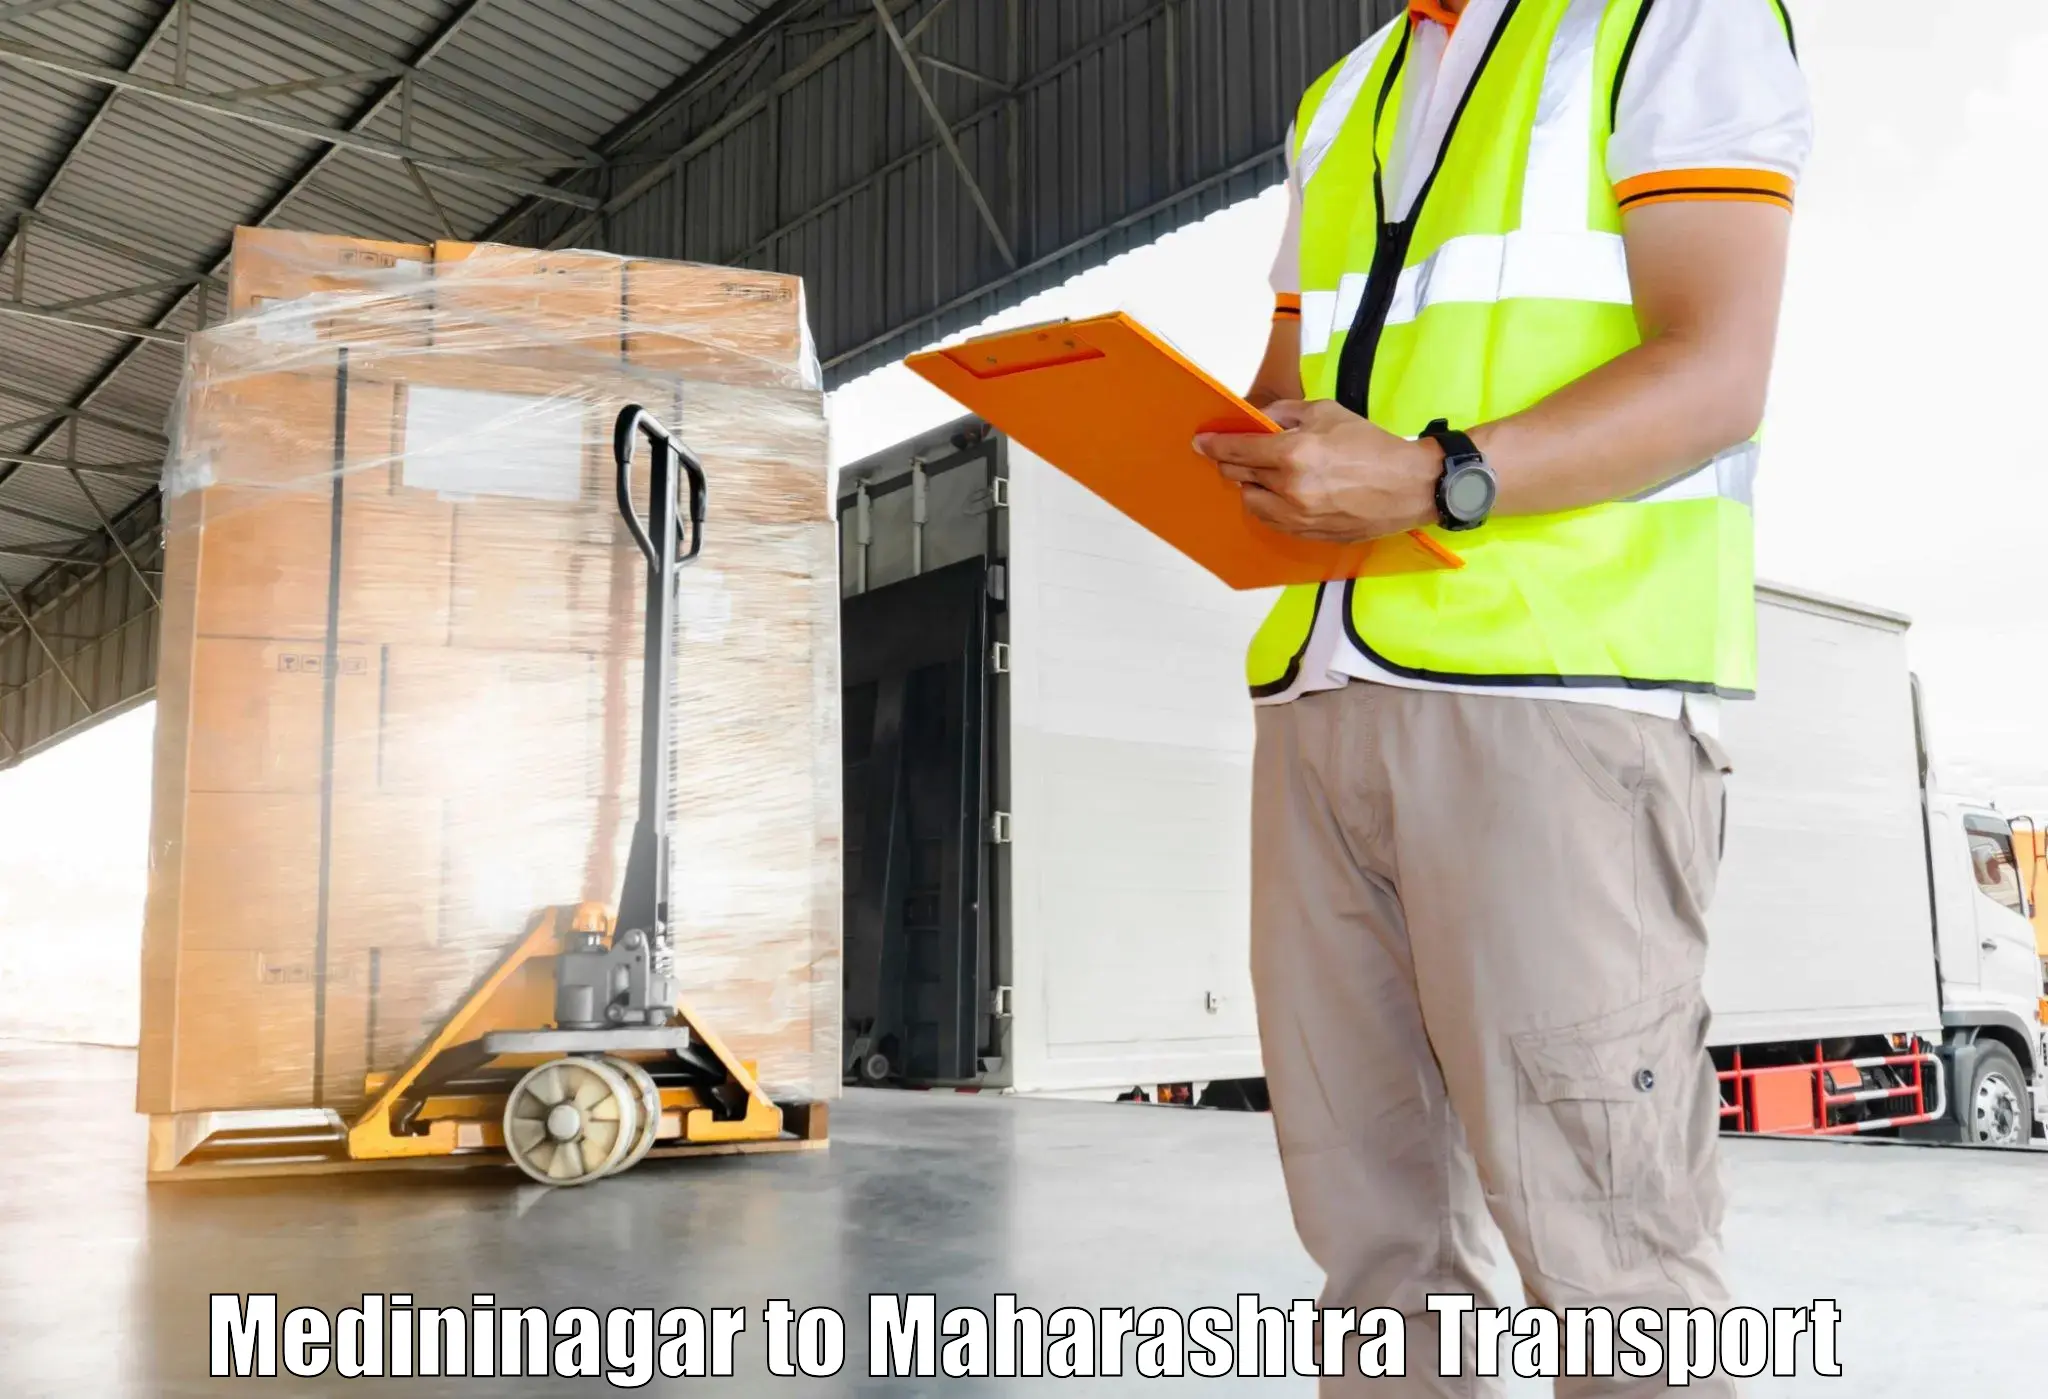 Transportation solution services Medininagar to Gadhinglaj